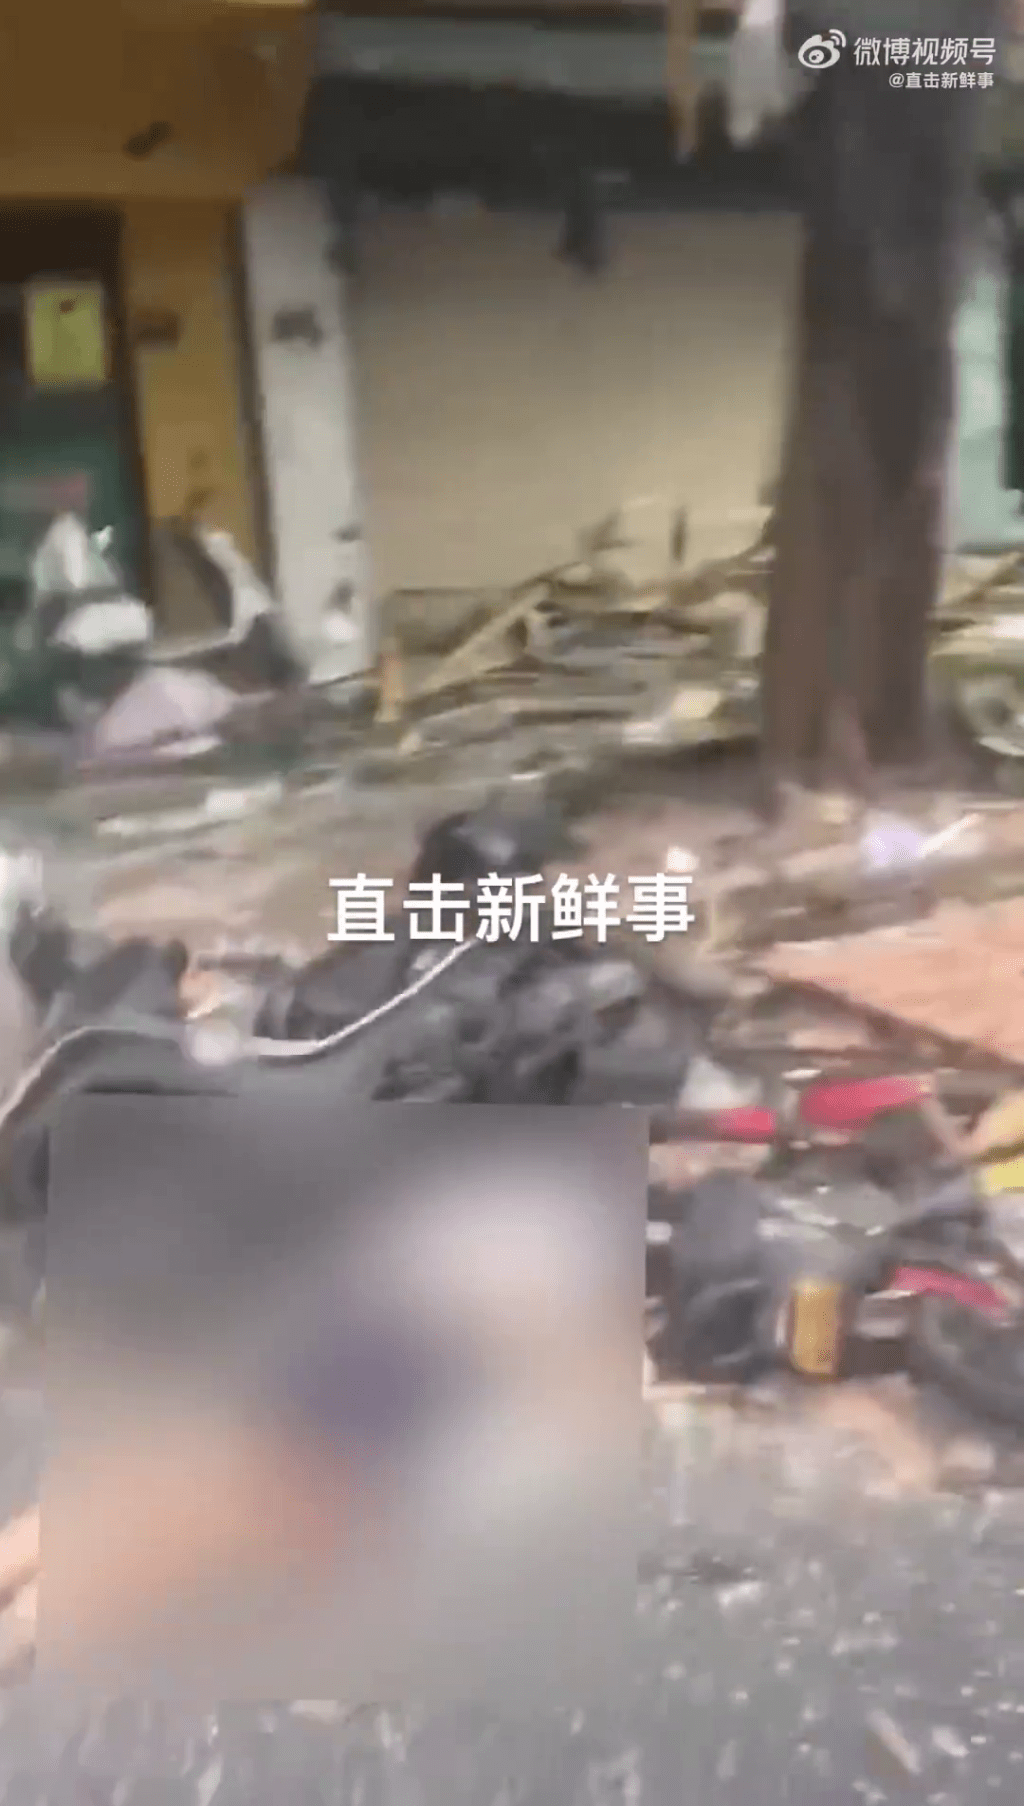 汕頭一快餐店發生石油氣罐爆炸，網傳影片疑似有死傷者躺在快餐店對出地上。網片截圖